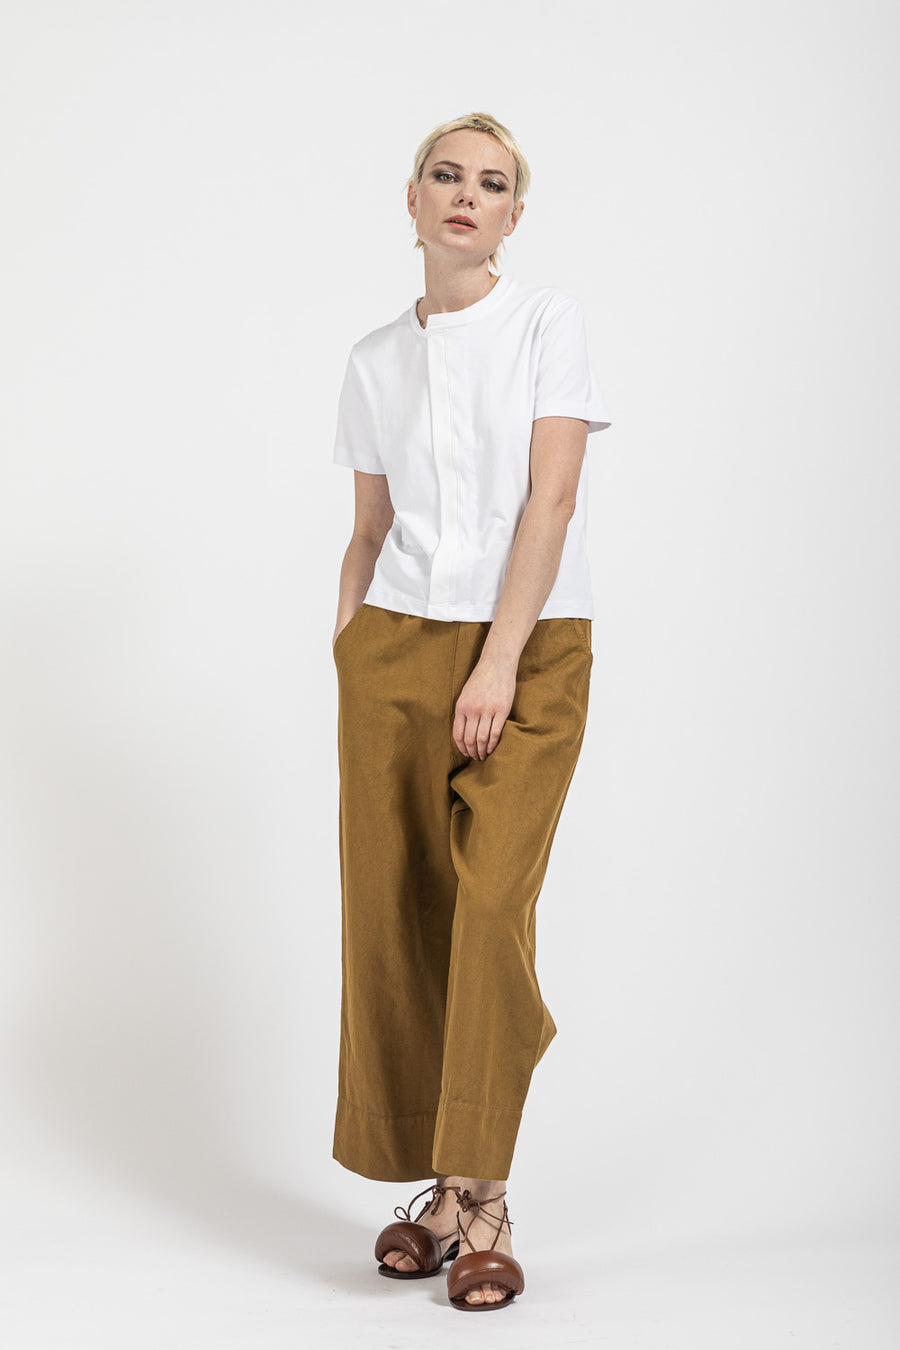 Pantalone Serie Numerica da donna in cotone e lino color oro SN854